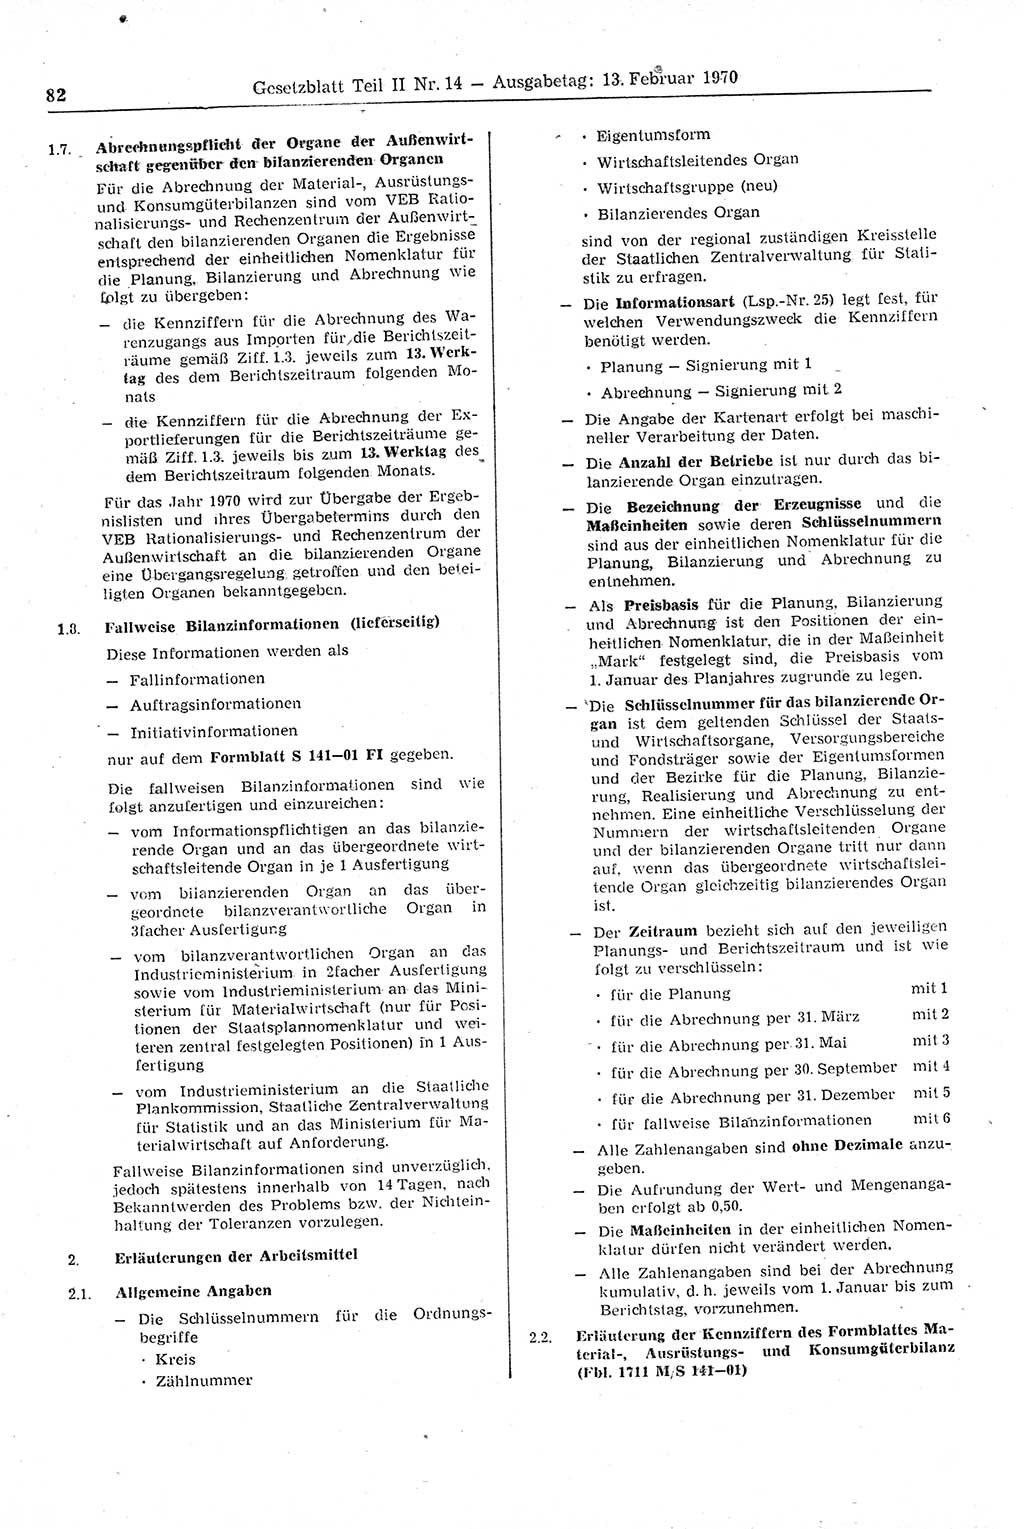 Gesetzblatt (GBl.) der Deutschen Demokratischen Republik (DDR) Teil ⅠⅠ 1970, Seite 82 (GBl. DDR ⅠⅠ 1970, S. 82)